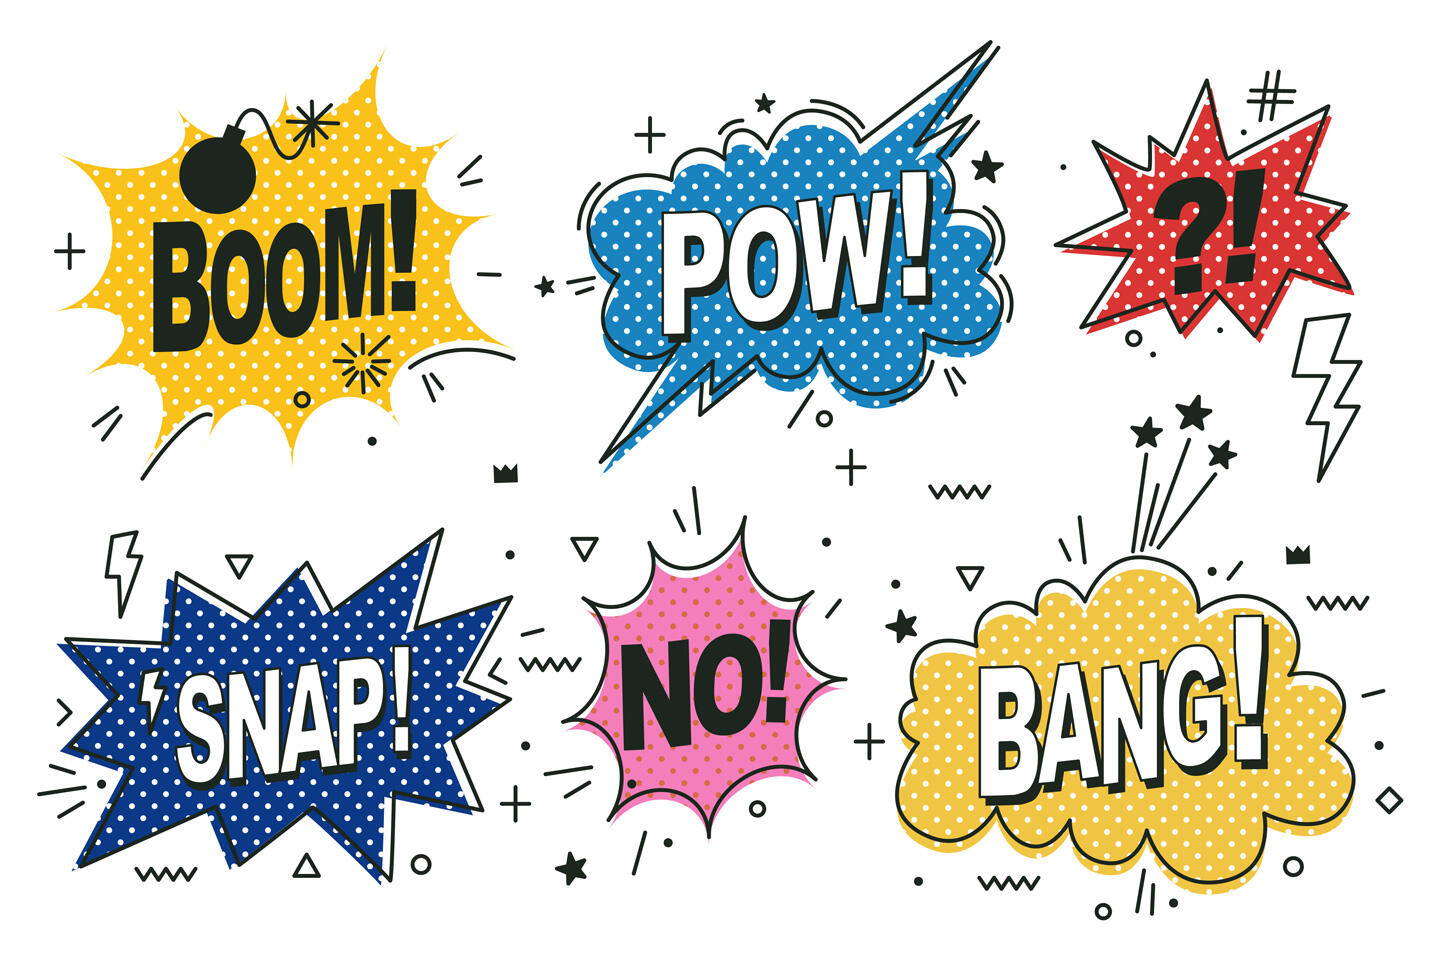 Verschiedene Sprechblasen im Comic-Stil mit Wörtern wie "BOOM!", "POW!", "SNAP!", "NEIN!" und "BANG!" in lebendigen Farben und Mustern aus Punkten, Sternen und Blitzen, die die Energie und Lebendigkeit von Comics vermitteln.